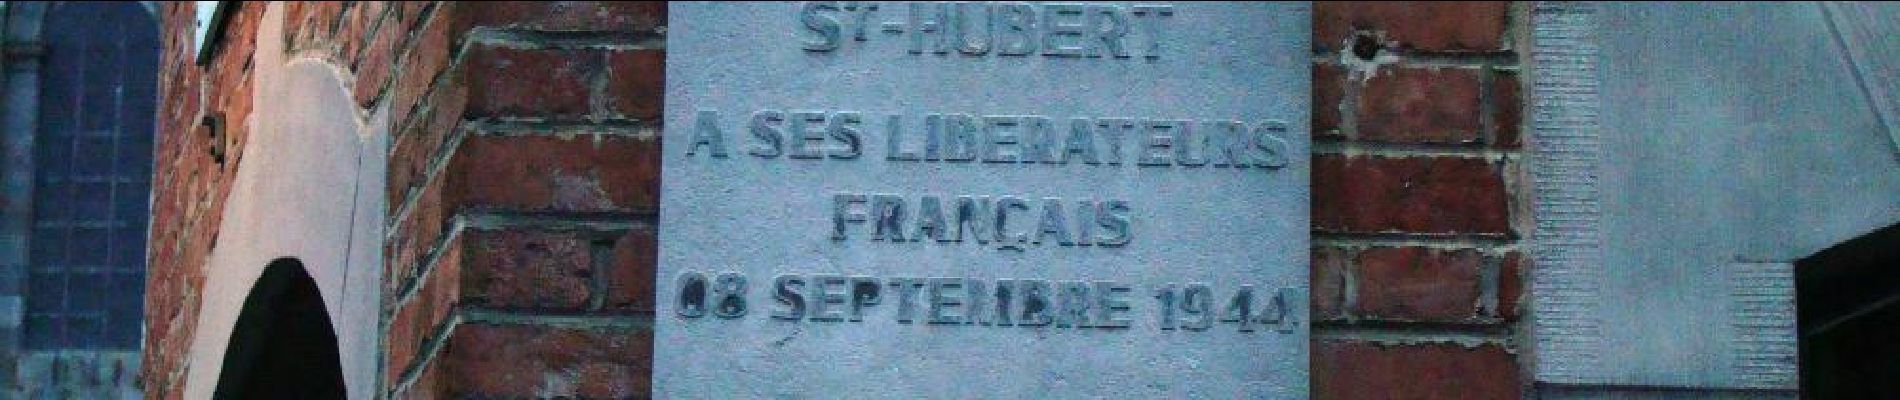 Point of interest Saint-Hubert - 5. Plaque de la Libération en septembre par les Français  - Photo